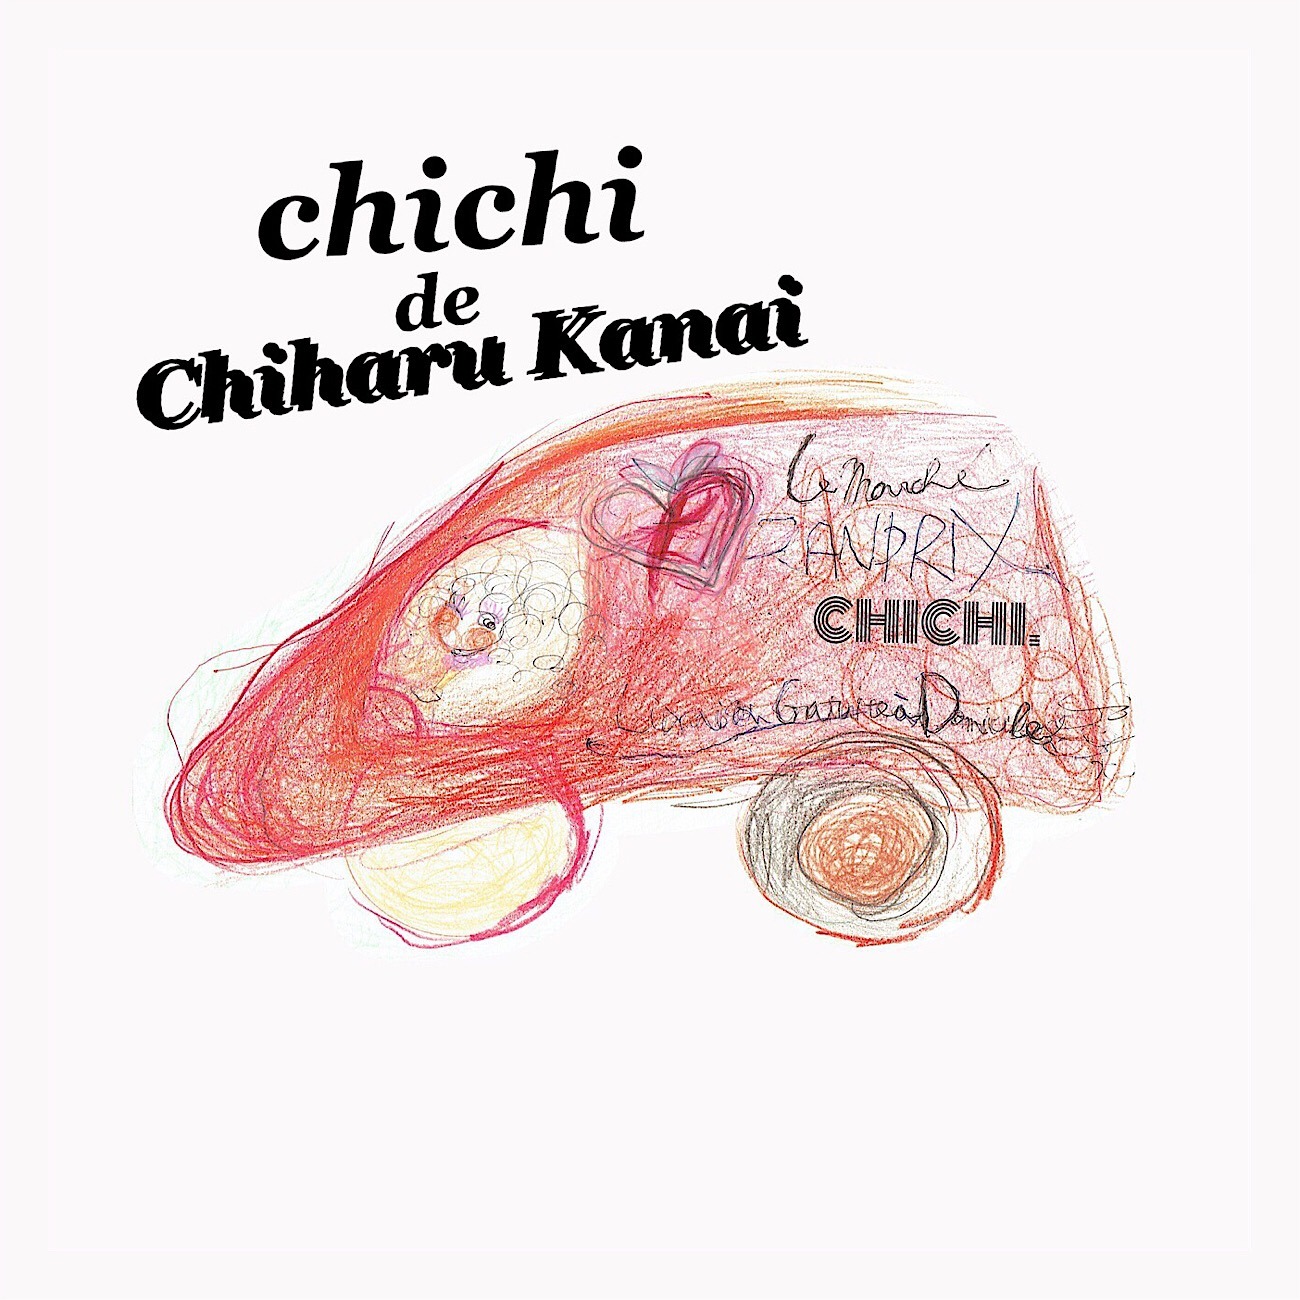 chichi de ChiharuKanai